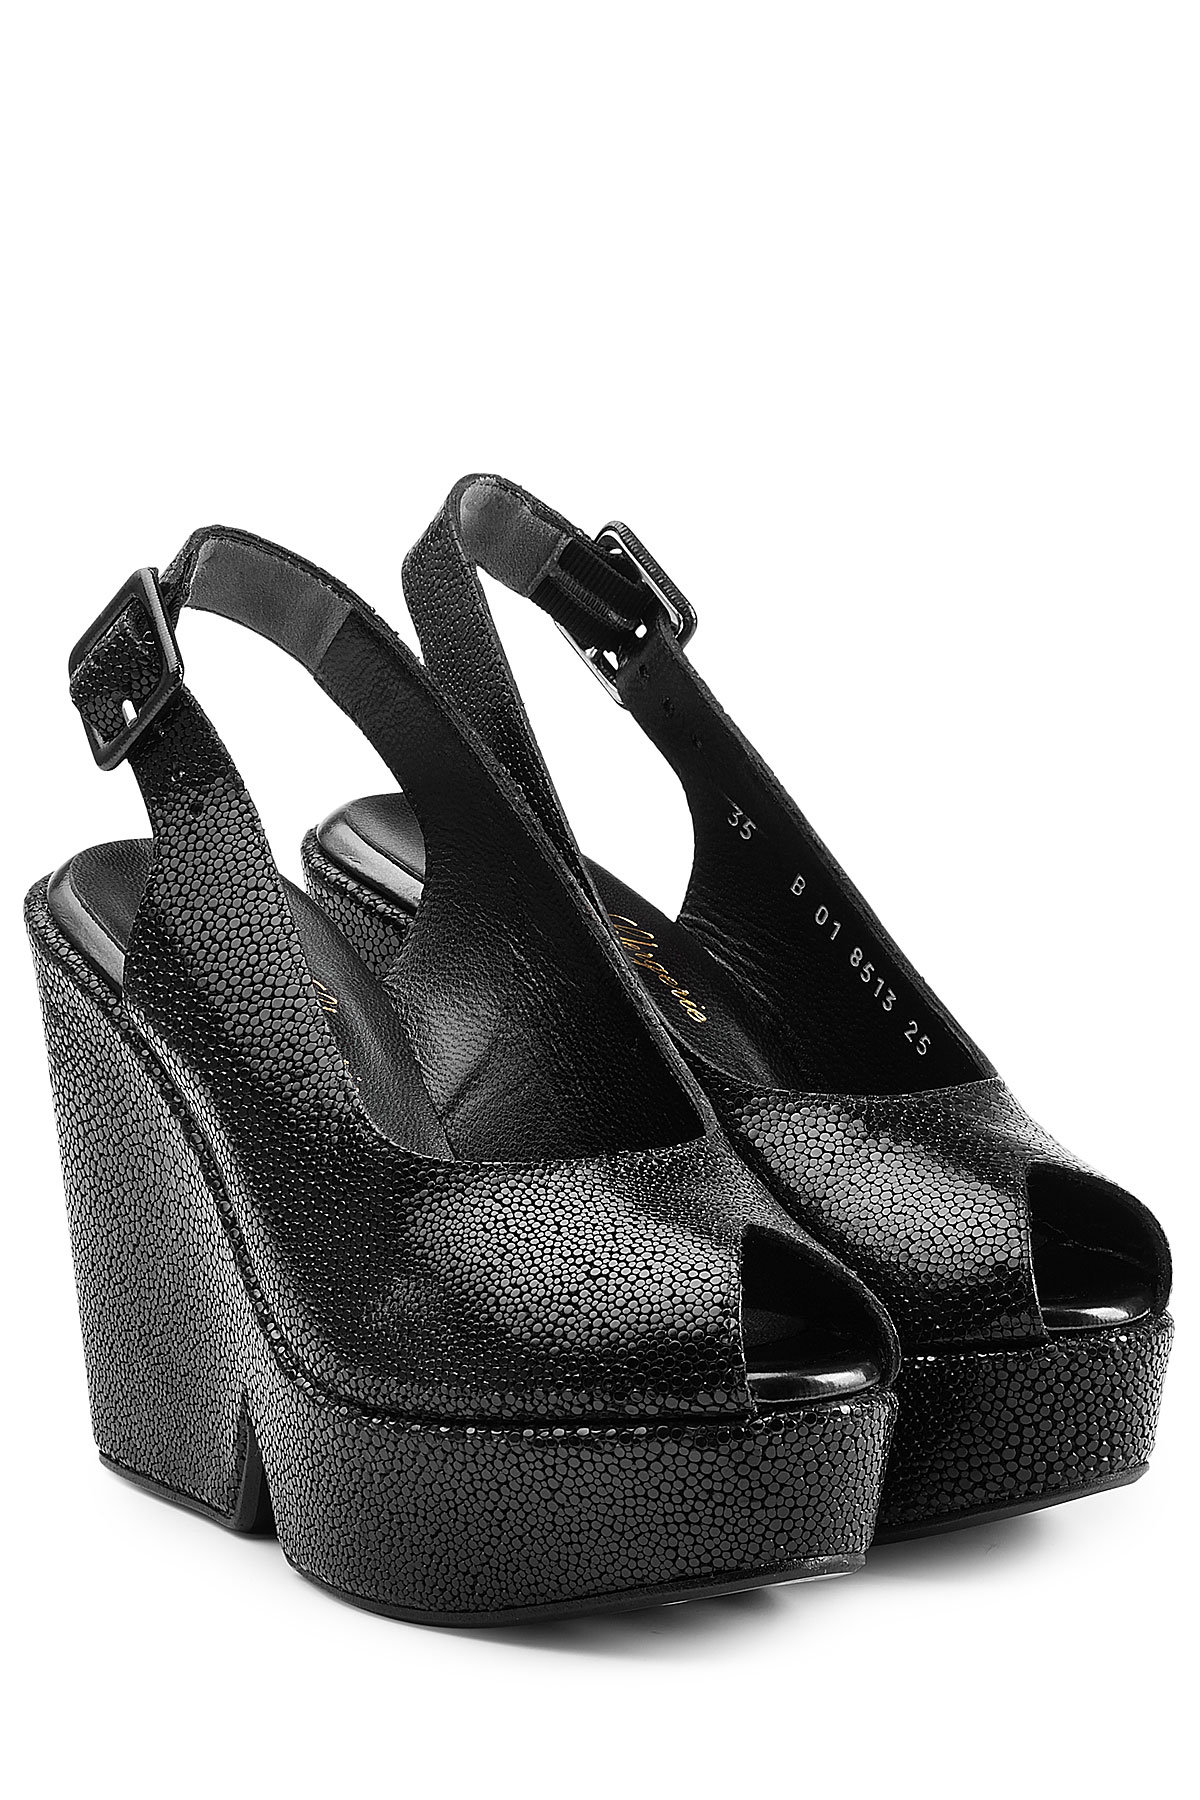 Robert Clergerie - Textured Leather Platform Sandals